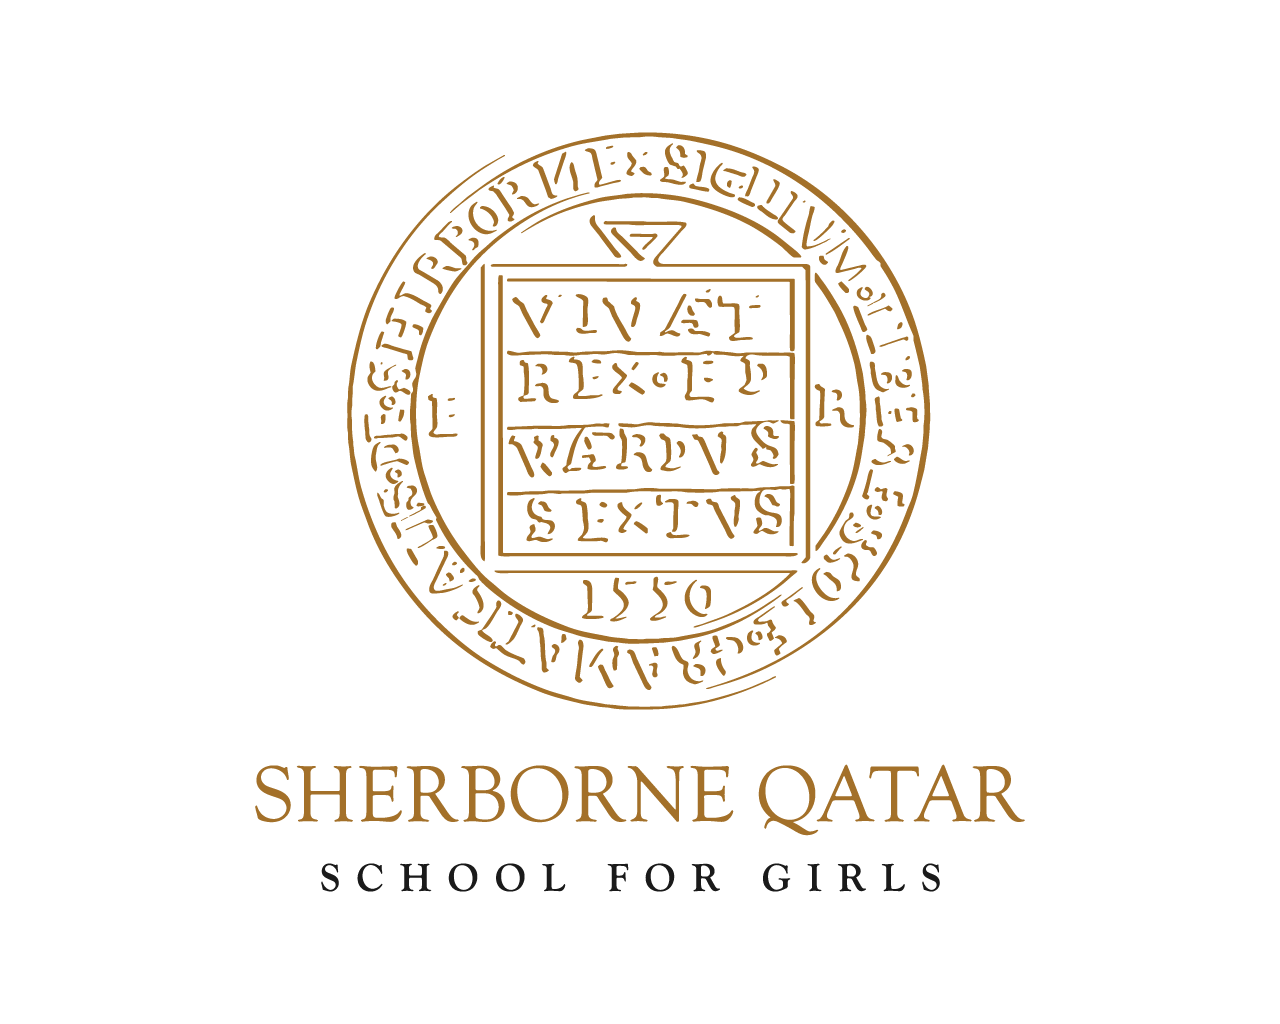 School for girls logo